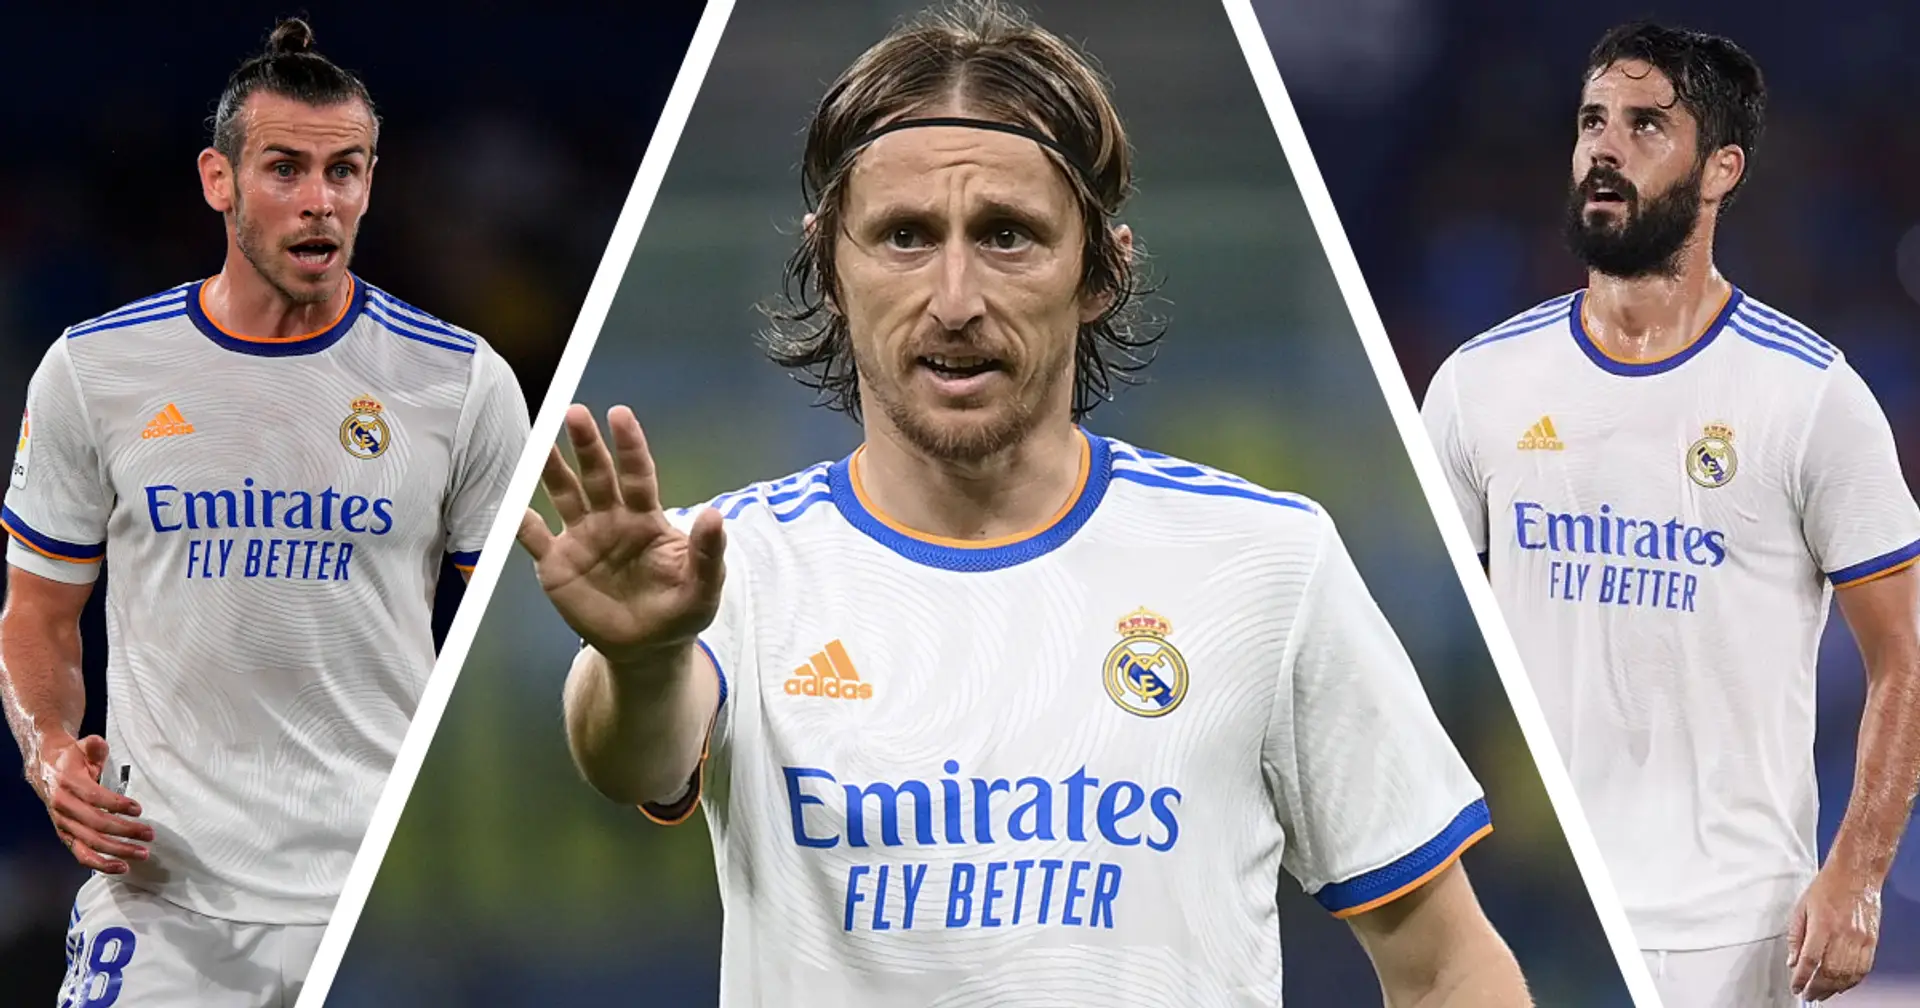 El Real Madrid se prepara para ofrecer un nuevo contrato a Modric; Bale, Isco y Marcelo no serán extendidos (fiabilidad: 4 estrellas)